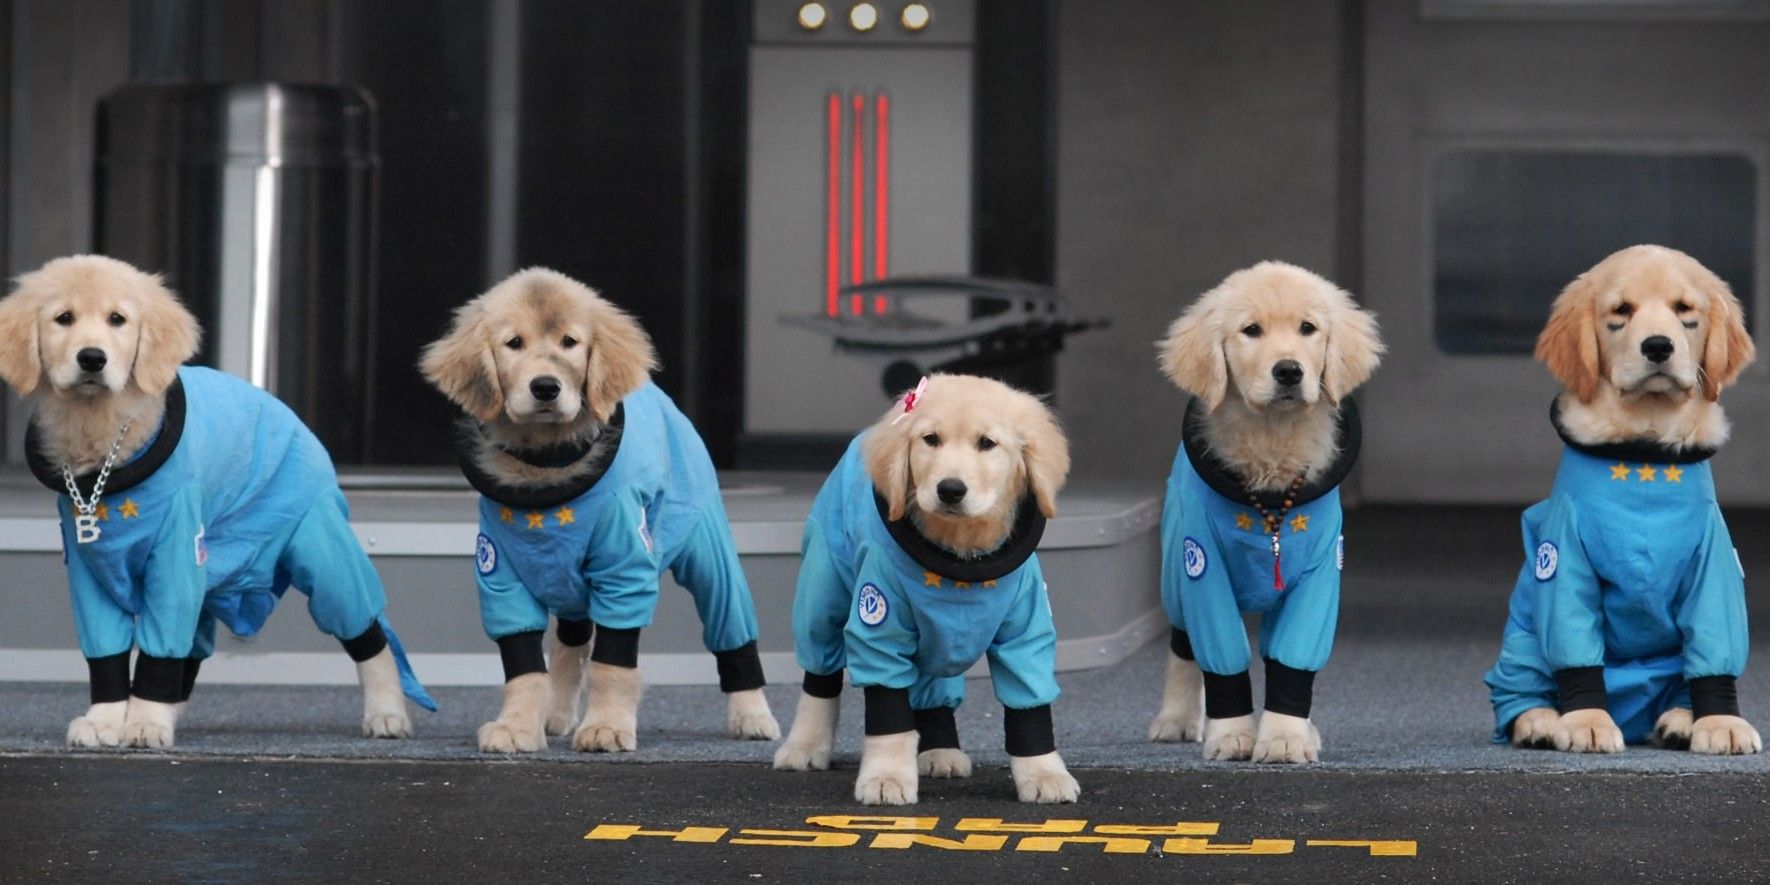 Space Buddies puppies